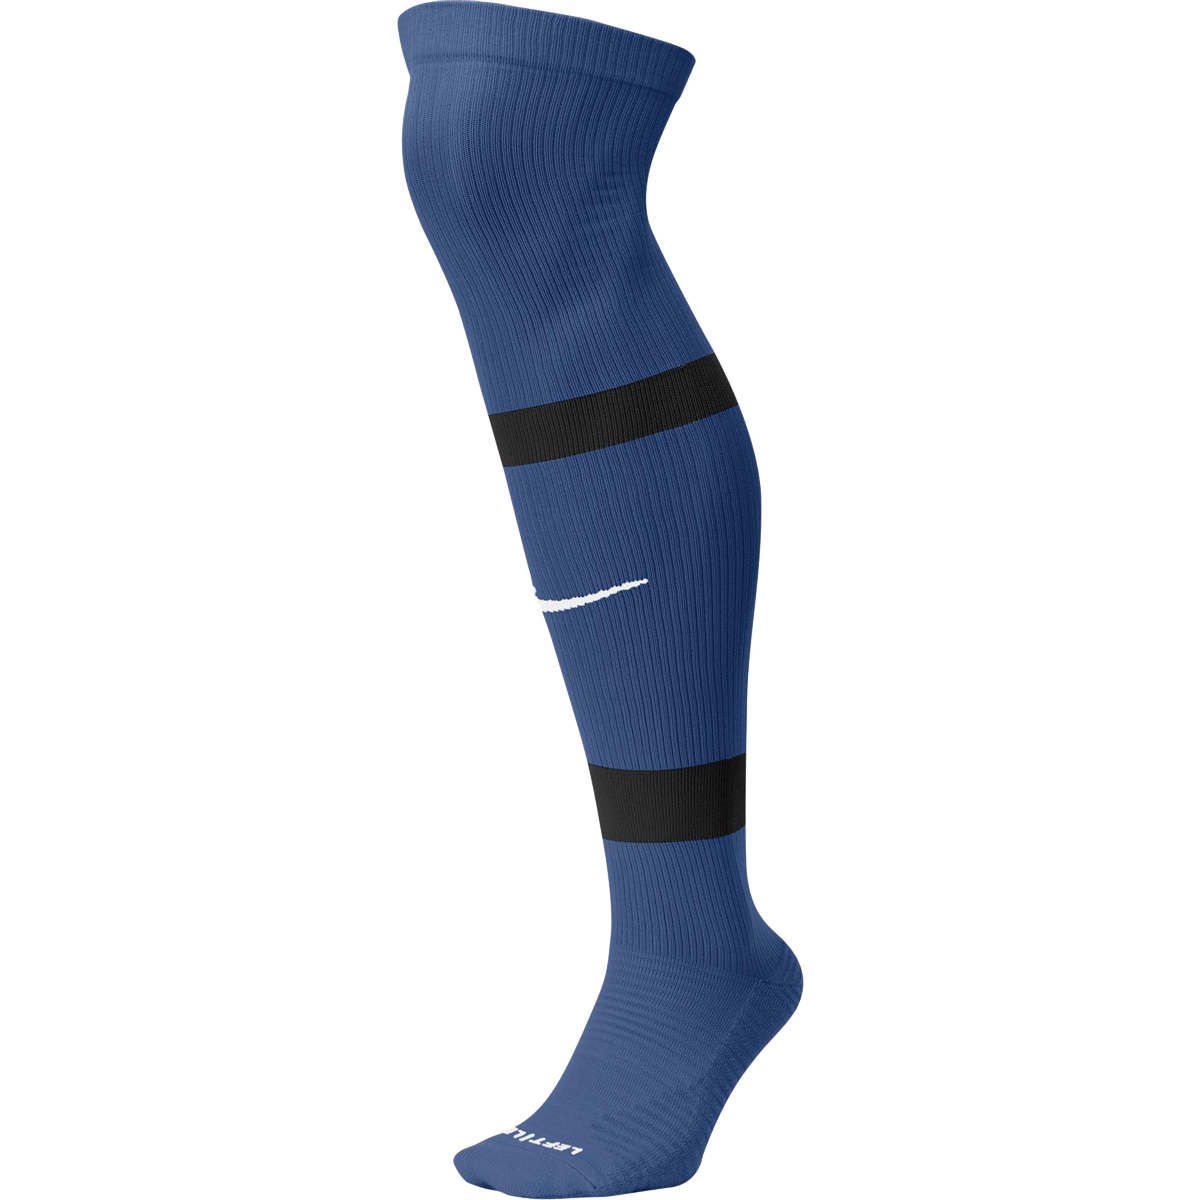 Nike MatchFit Knee High tmavě modrá EU 38/42